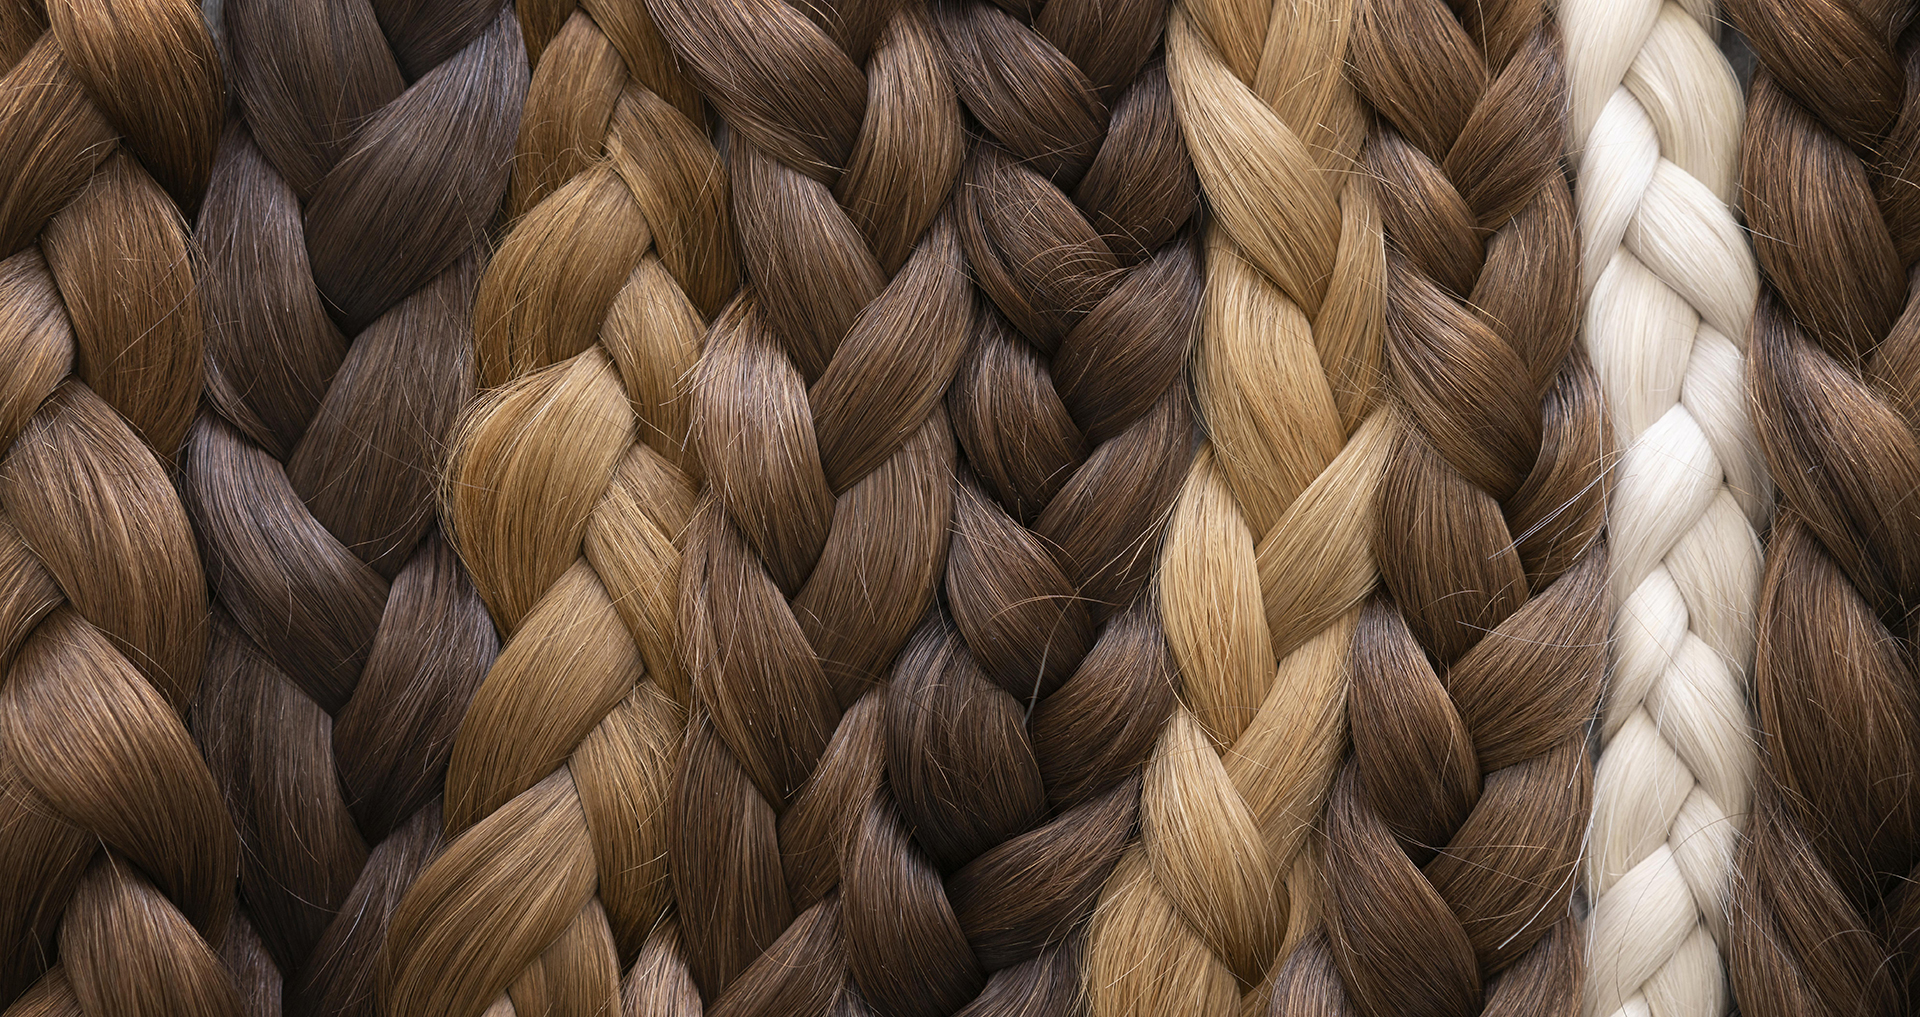 Senkrecht aneinander liegende Haarbündel in verschiedenen Farbtiefen: braun, dunkelblond, Mittelblond, hellblond und weiß.